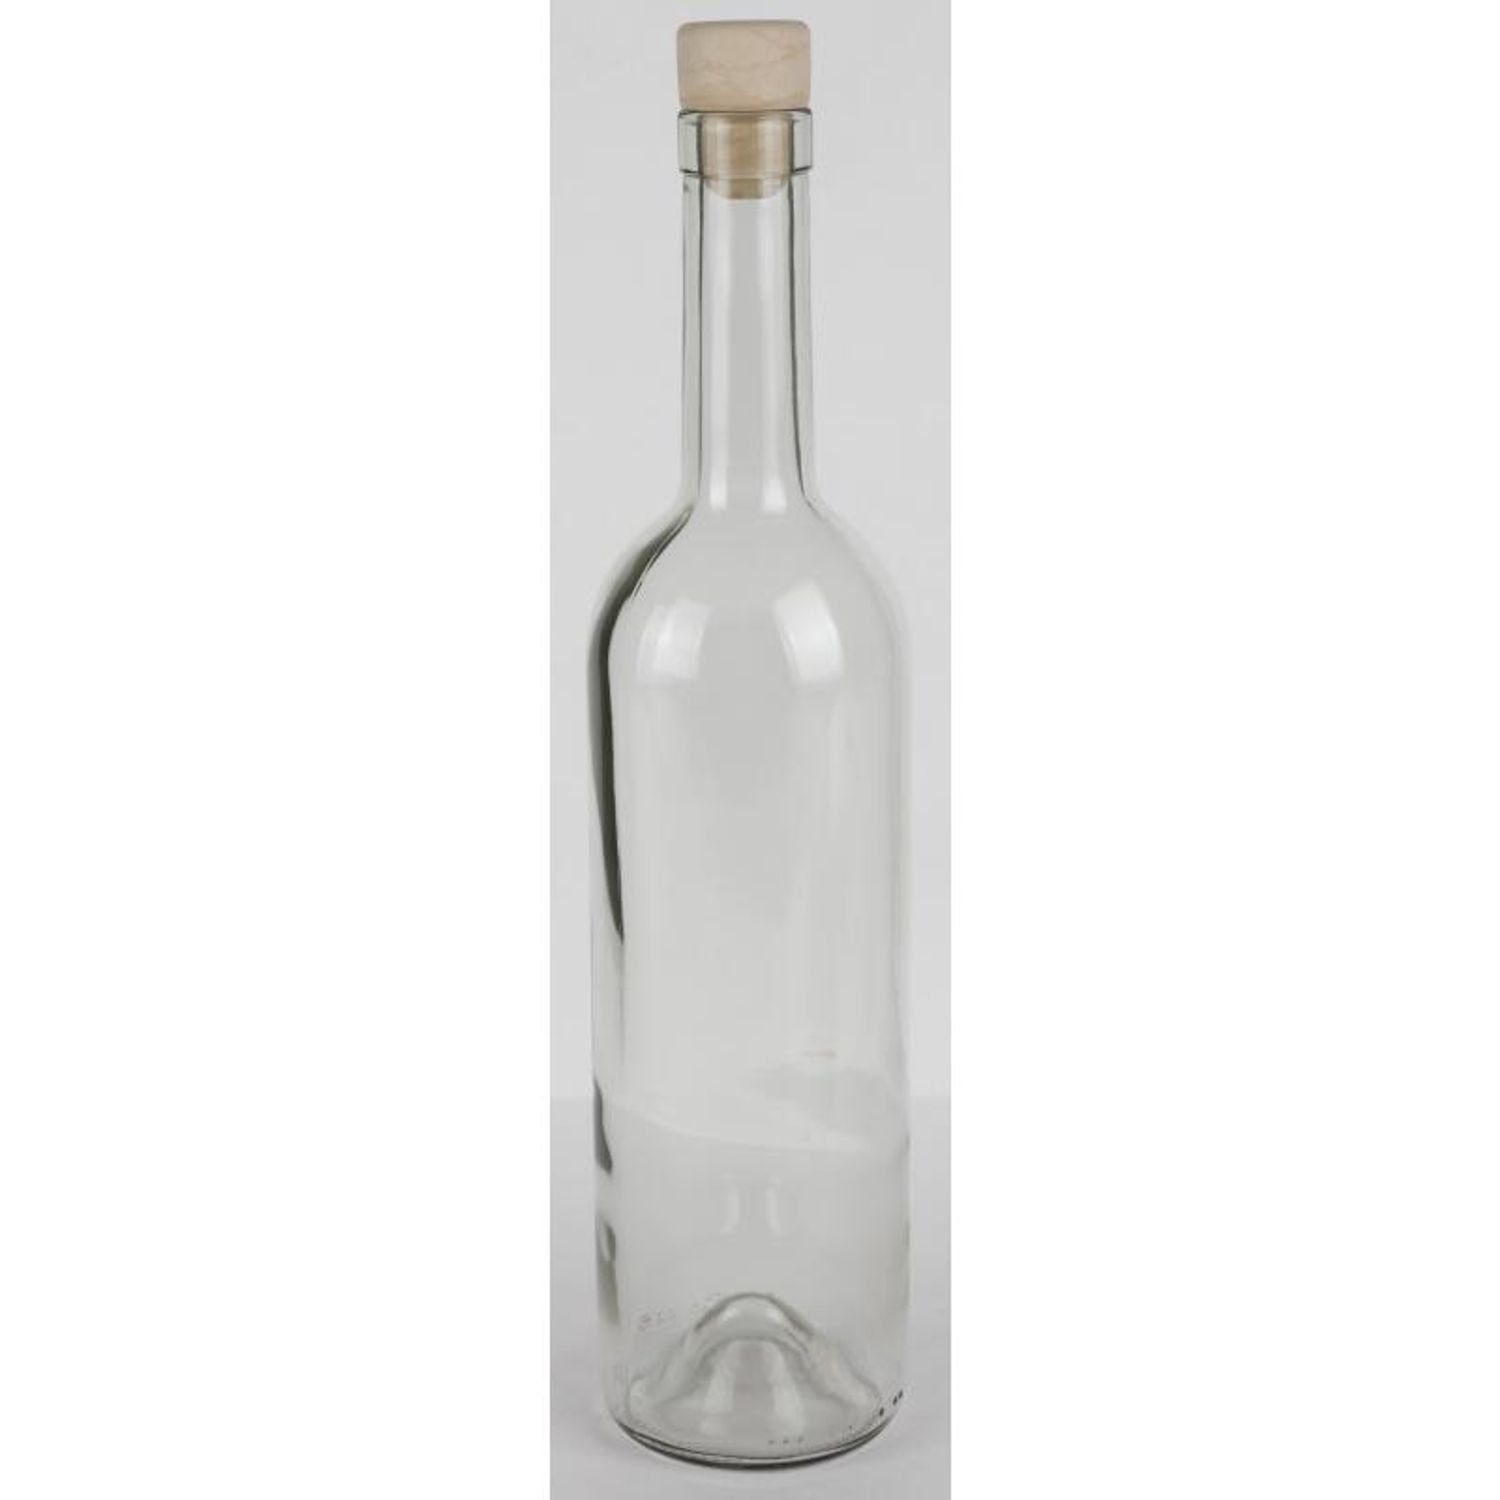 Omega Spolka Jawna 0,75L Saft Glasflasche Trinken Trinkflasche Küc 15x Etikett Wasser Korkenverschluss